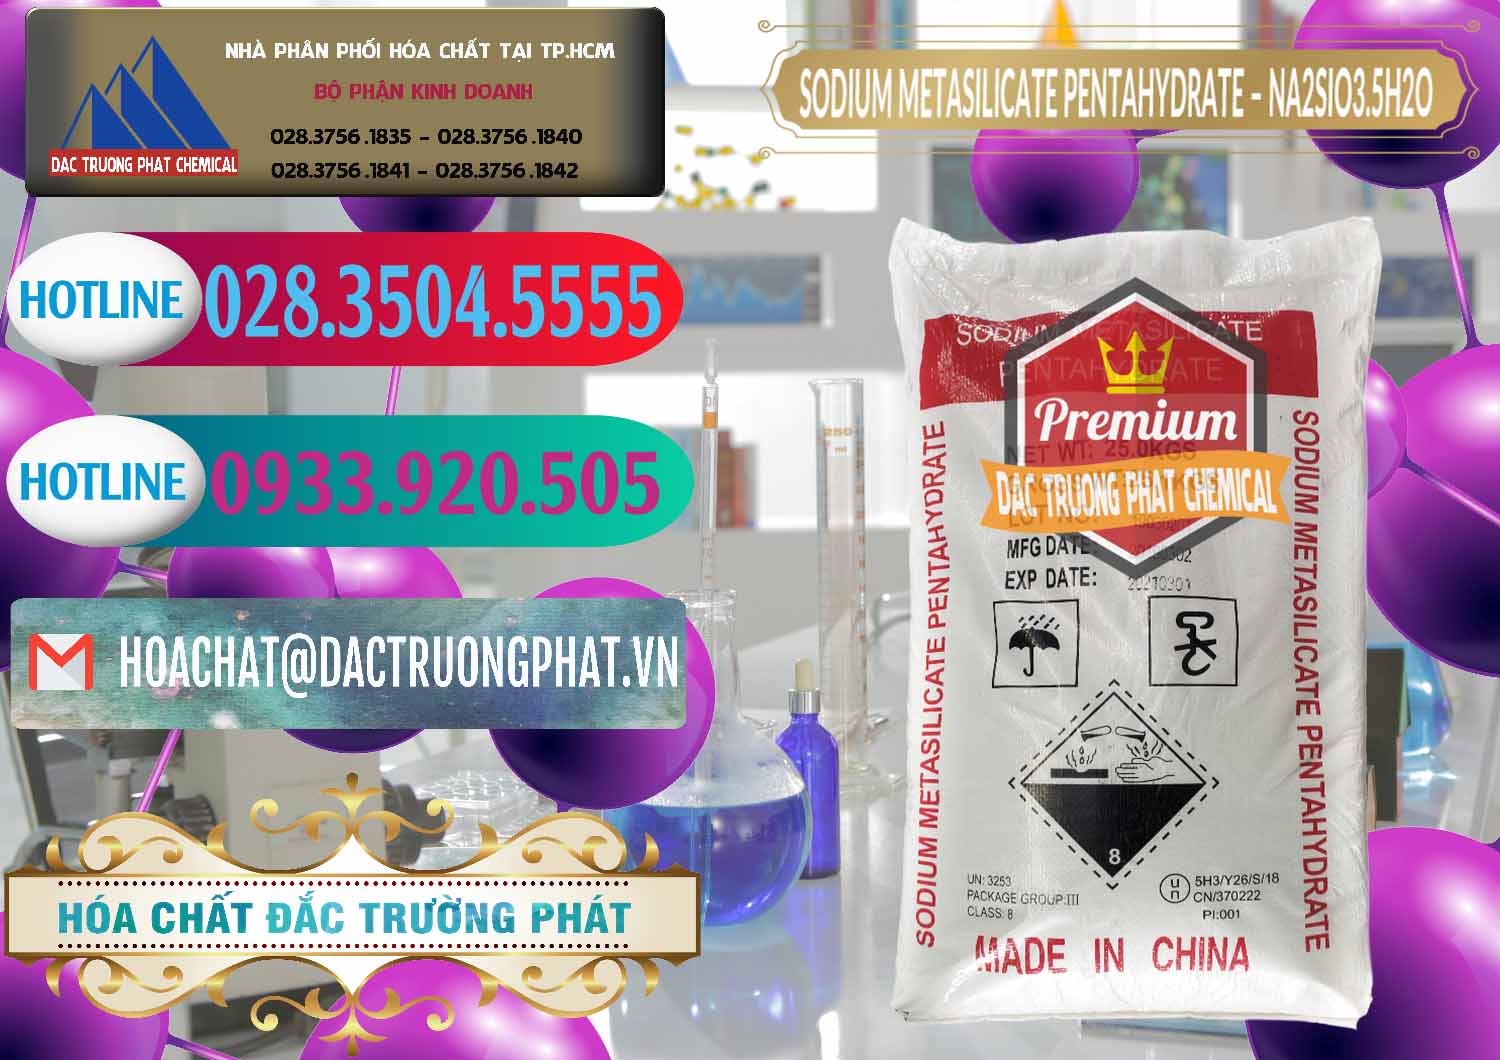 Cty cung cấp & bán Sodium Metasilicate Pentahydrate – Silicate Bột Trung Quốc China - 0147 - Cty chuyên bán - cung cấp hóa chất tại TP.HCM - truongphat.vn